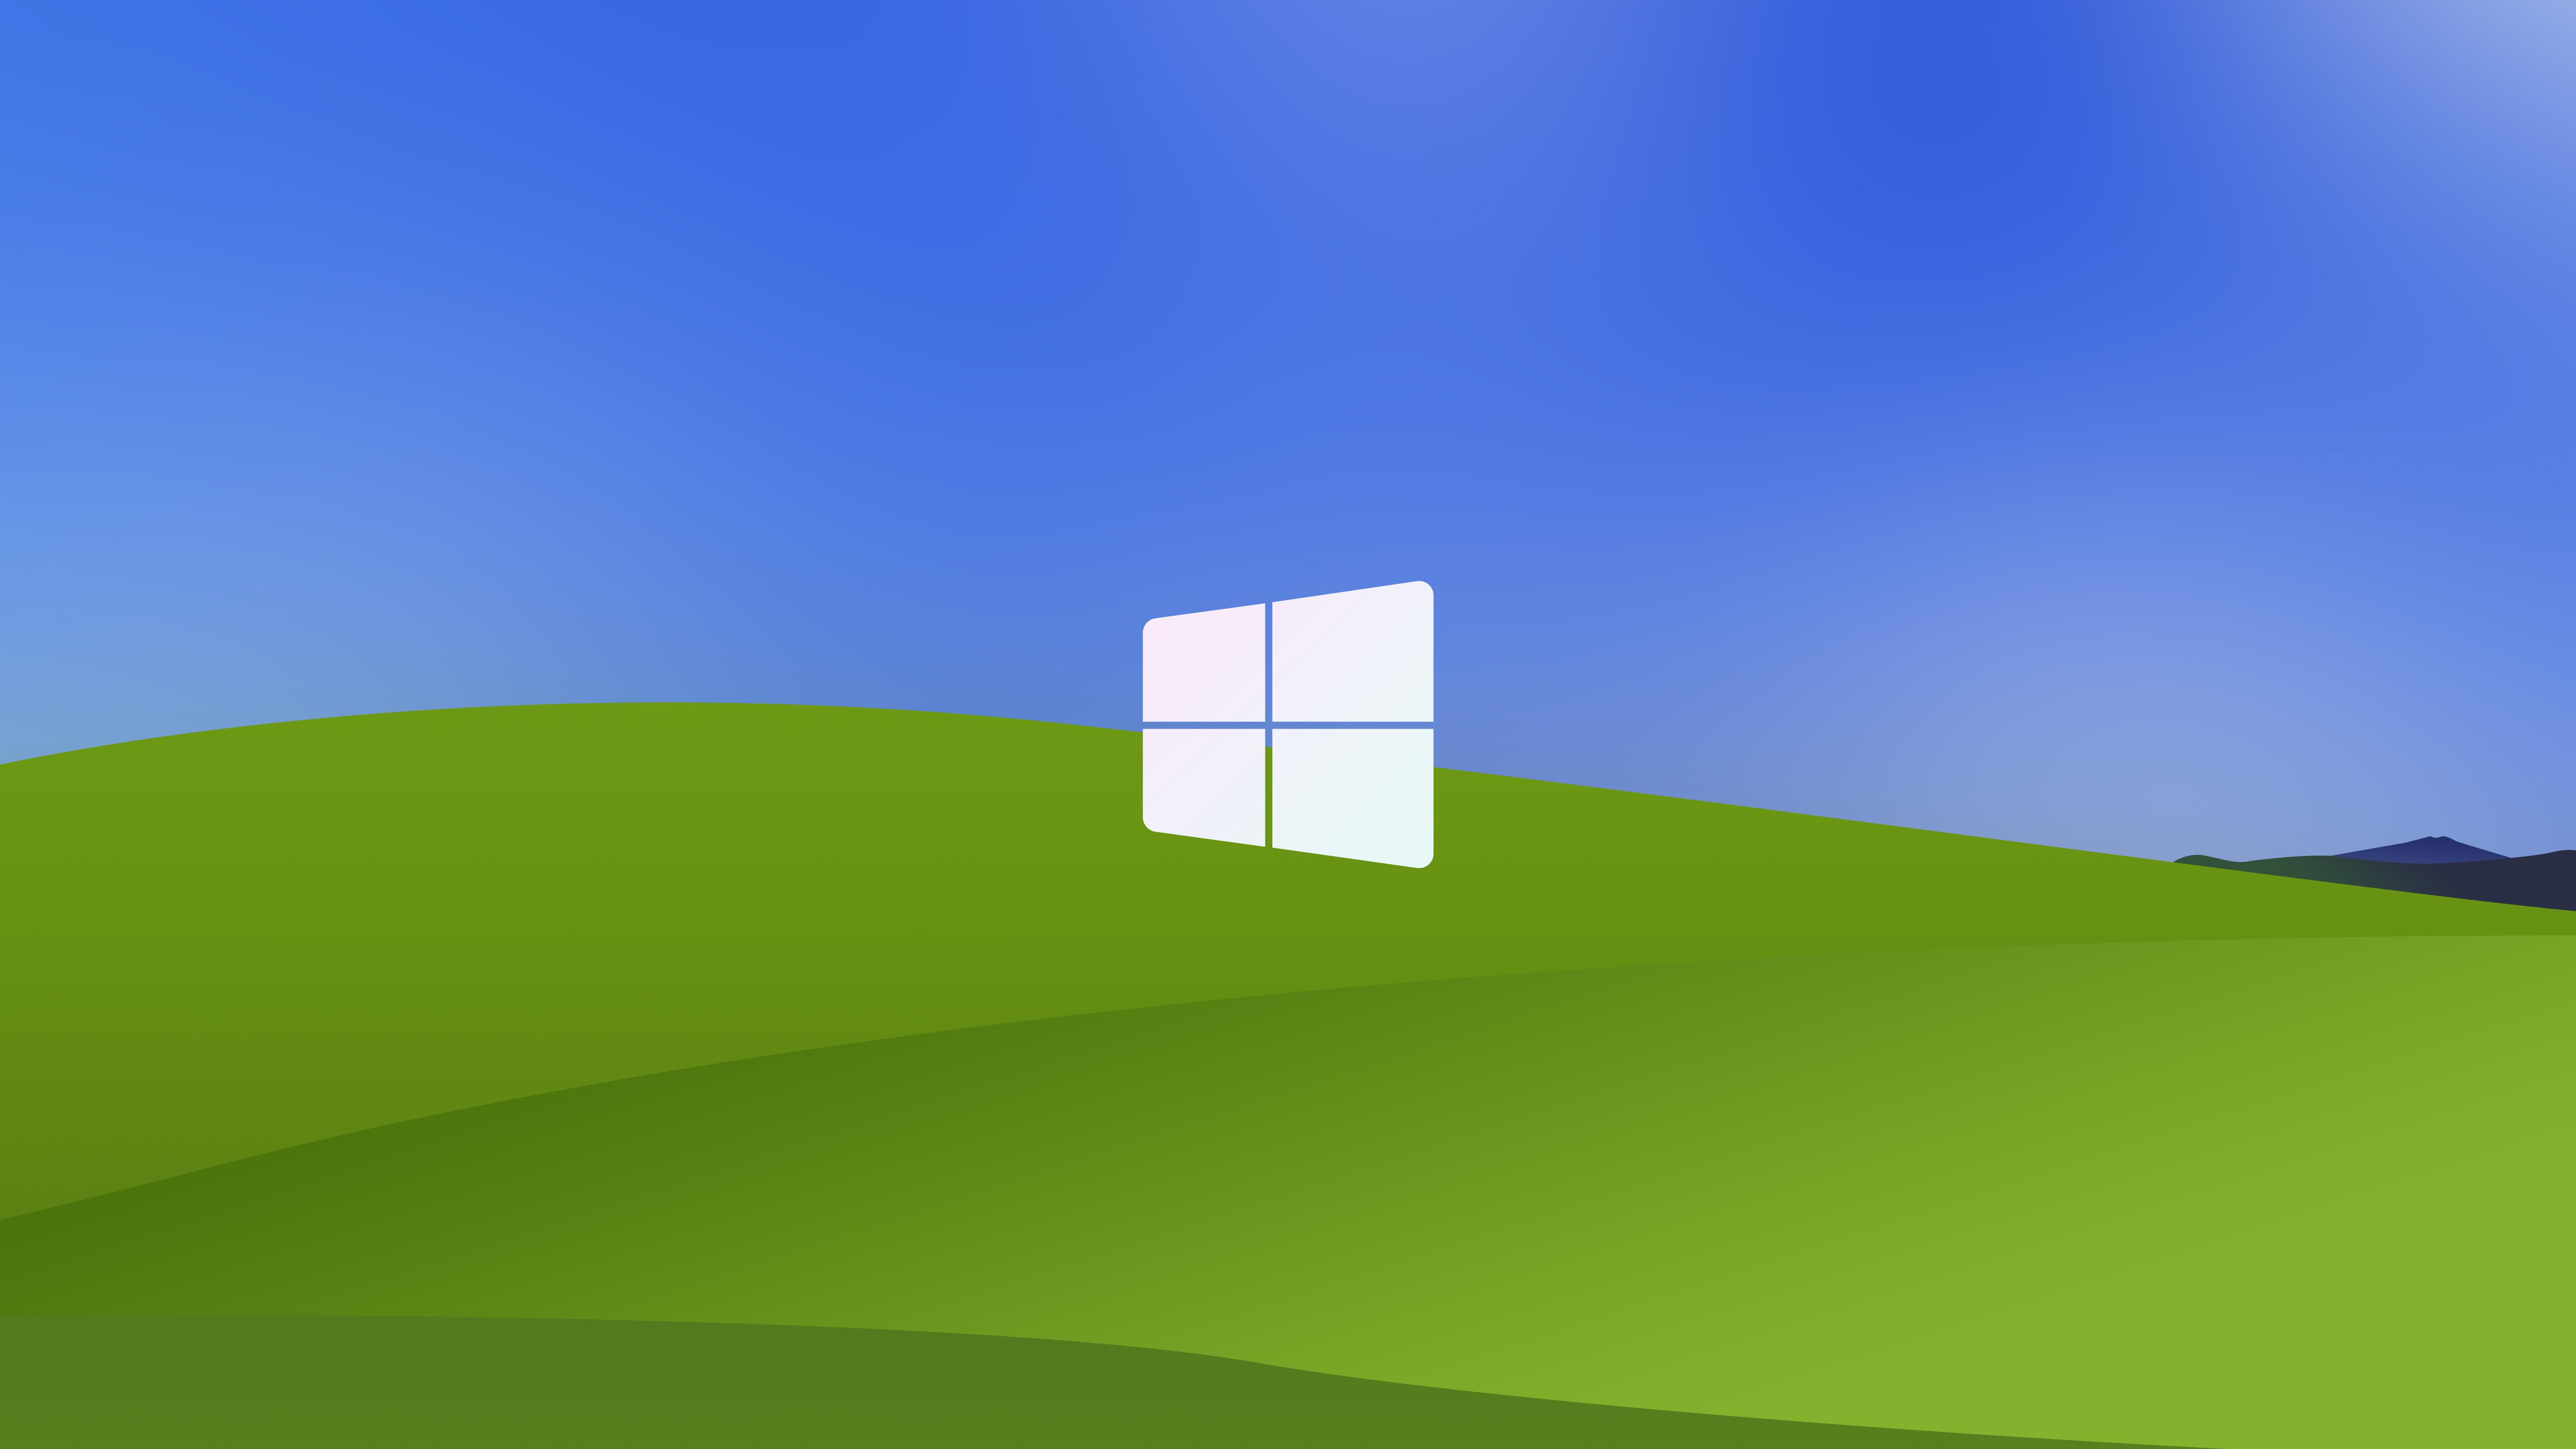 Logo Windows XP - biểu tượng quen thuộc của hàng triệu người dùng máy tính trên toàn thế giới. Với thiết kế đơn giản, màu xanh rực rỡ cùng với hình tròn lớn, các bạn sẽ không thể bỏ qua bức ảnh thú vị này. Hãy xem ngay để khám phá thế giới công nghệ đầy màu sắc!